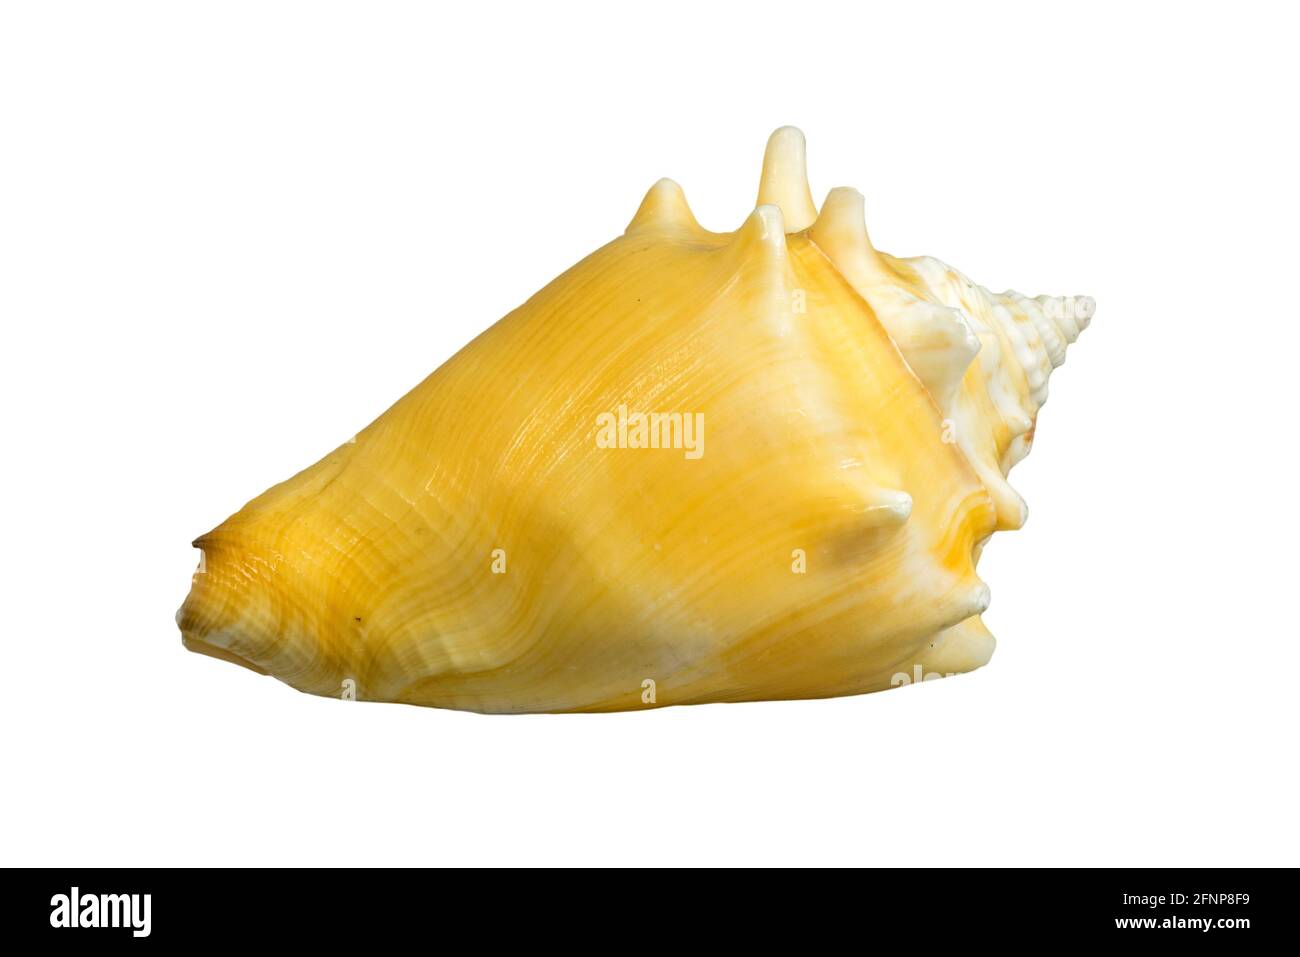 Le conch de combat de Floride (Strombus alatus), l'escargot de mer, le mollusque gastéropode marin originaire de l'océan Atlantique occidental et du golfe du Mexique sur fond blanc Banque D'Images